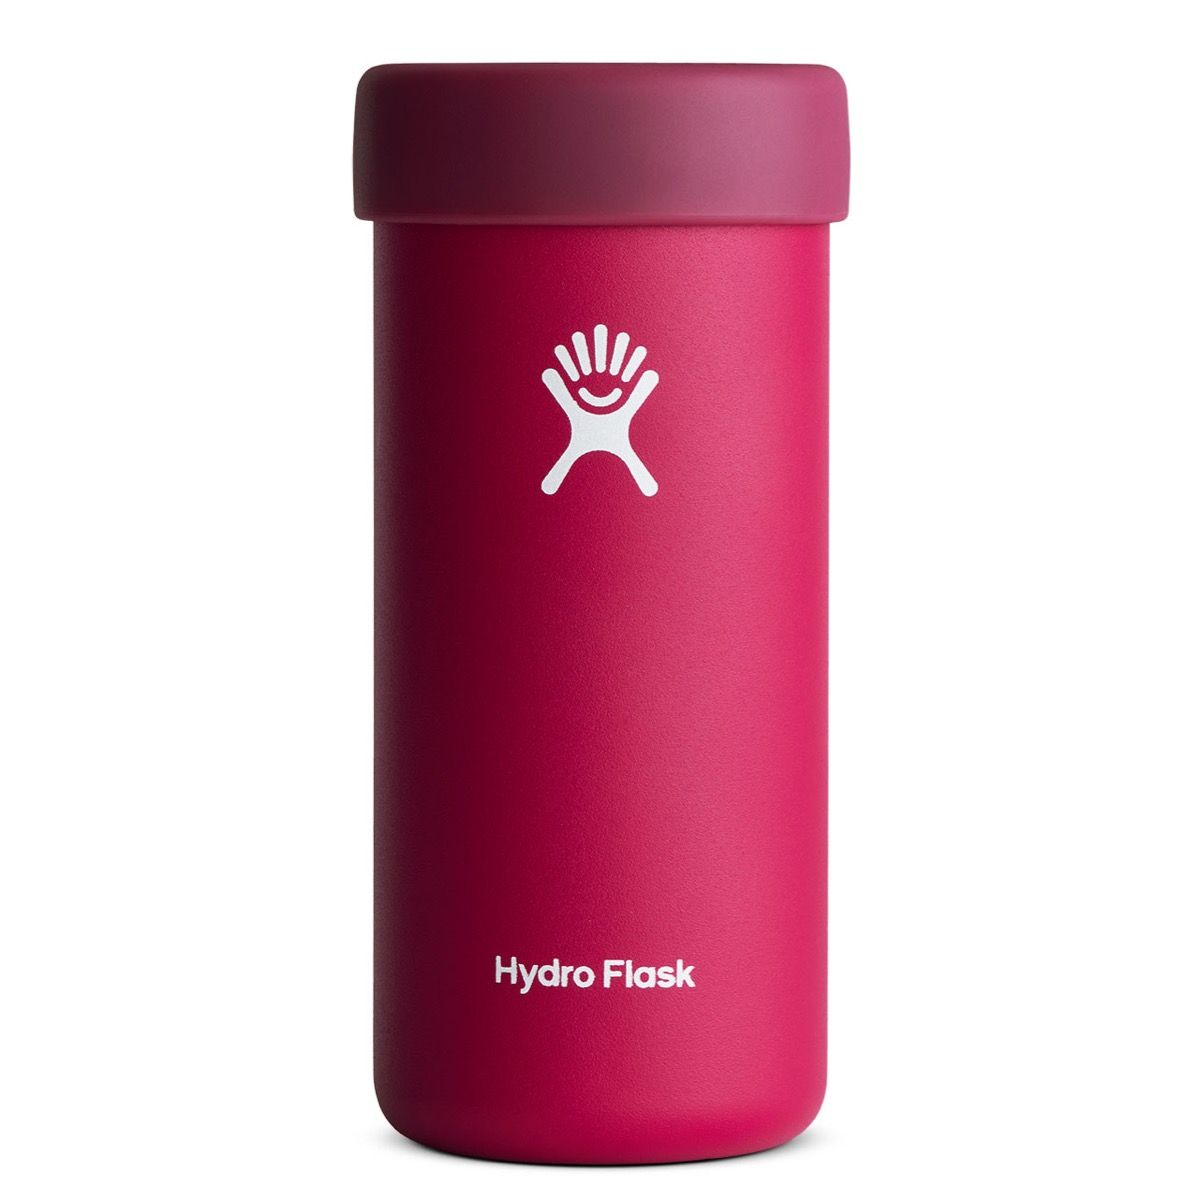 Hydro Flask 24 oz Coffee Mug Snapper